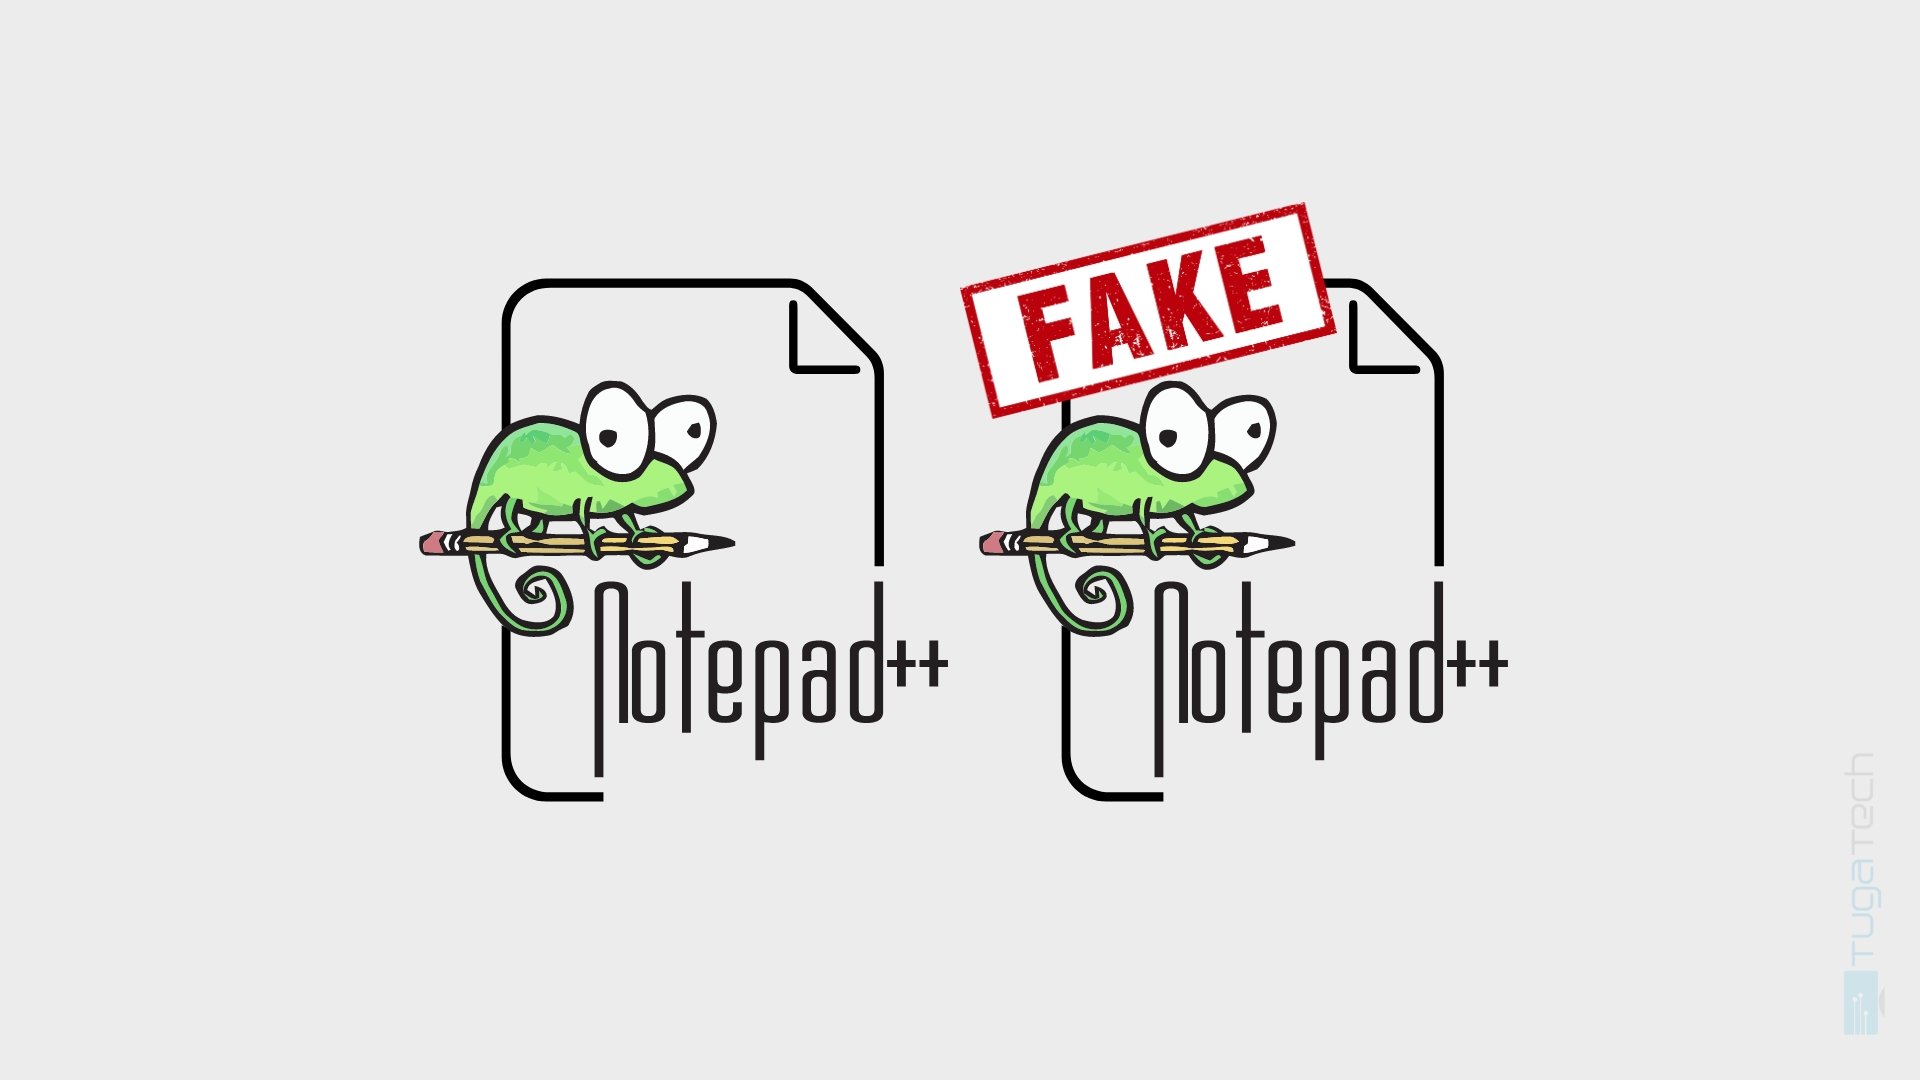 Criador de Notepad++ alerta para site falso com nome do programa